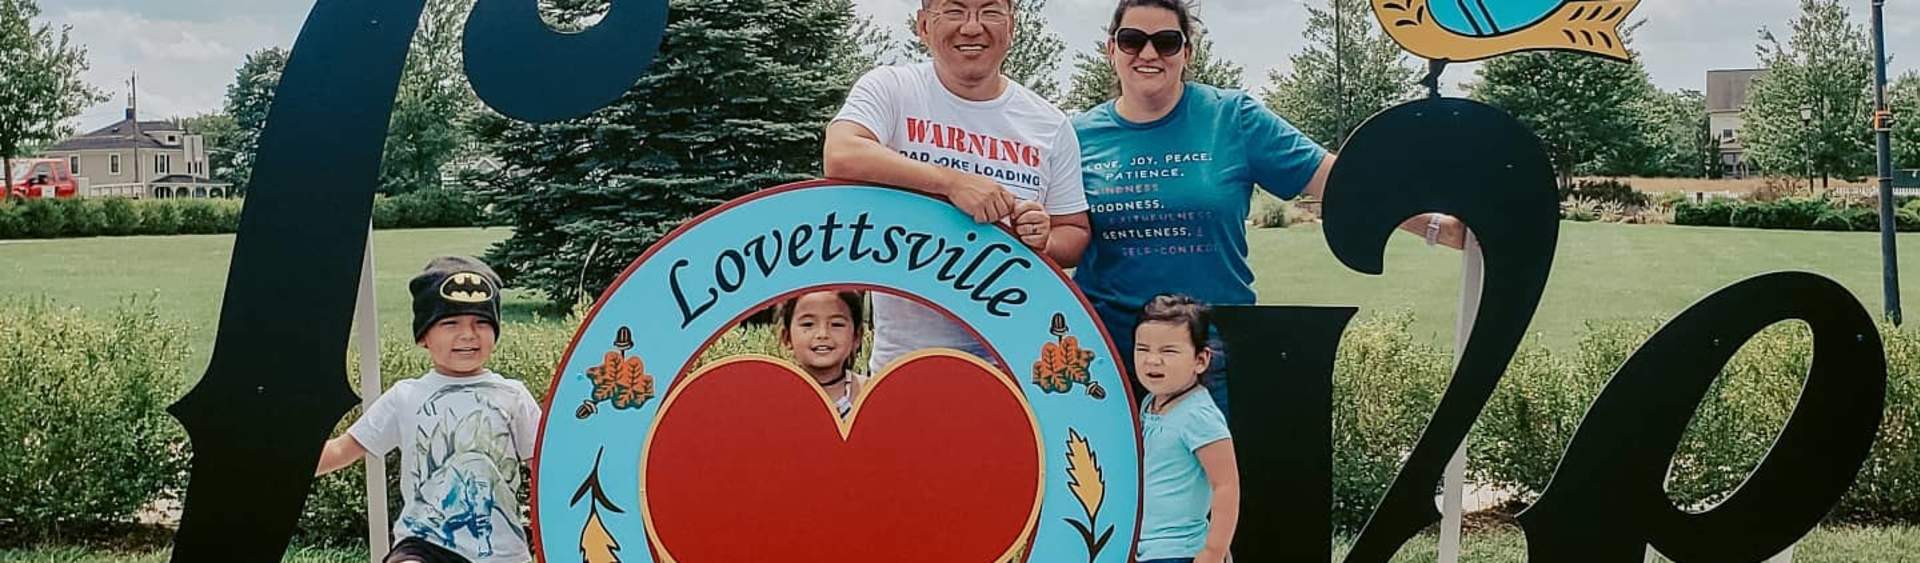 LoveLoudounLikeALocal: Lovettsville 